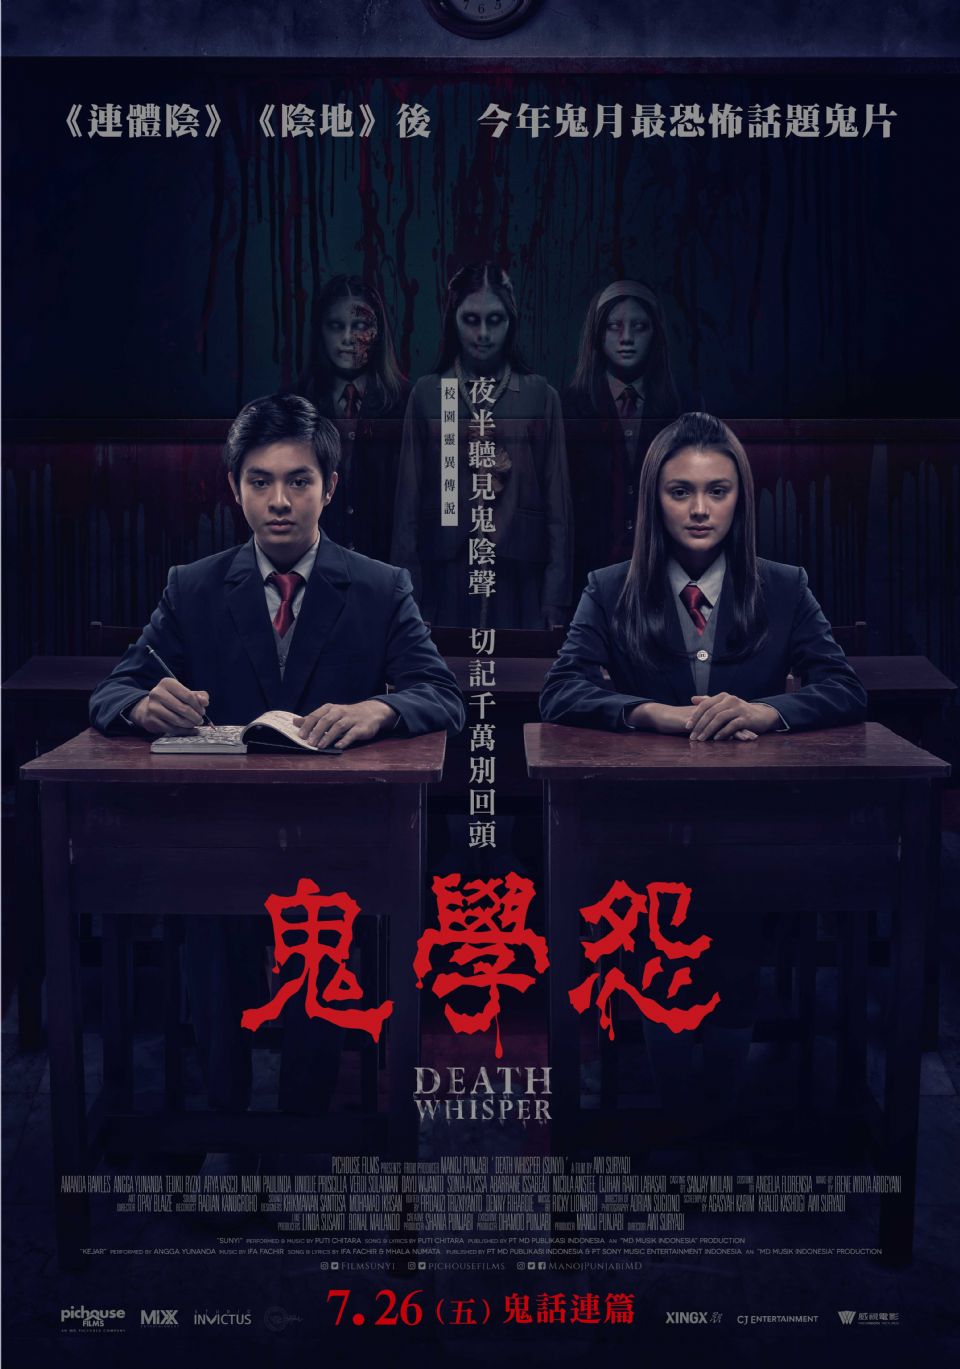 2019年強檔校園鬼片「鬼學怨」(Death Whisper)，於農曆鬼月7月26日即將上檔